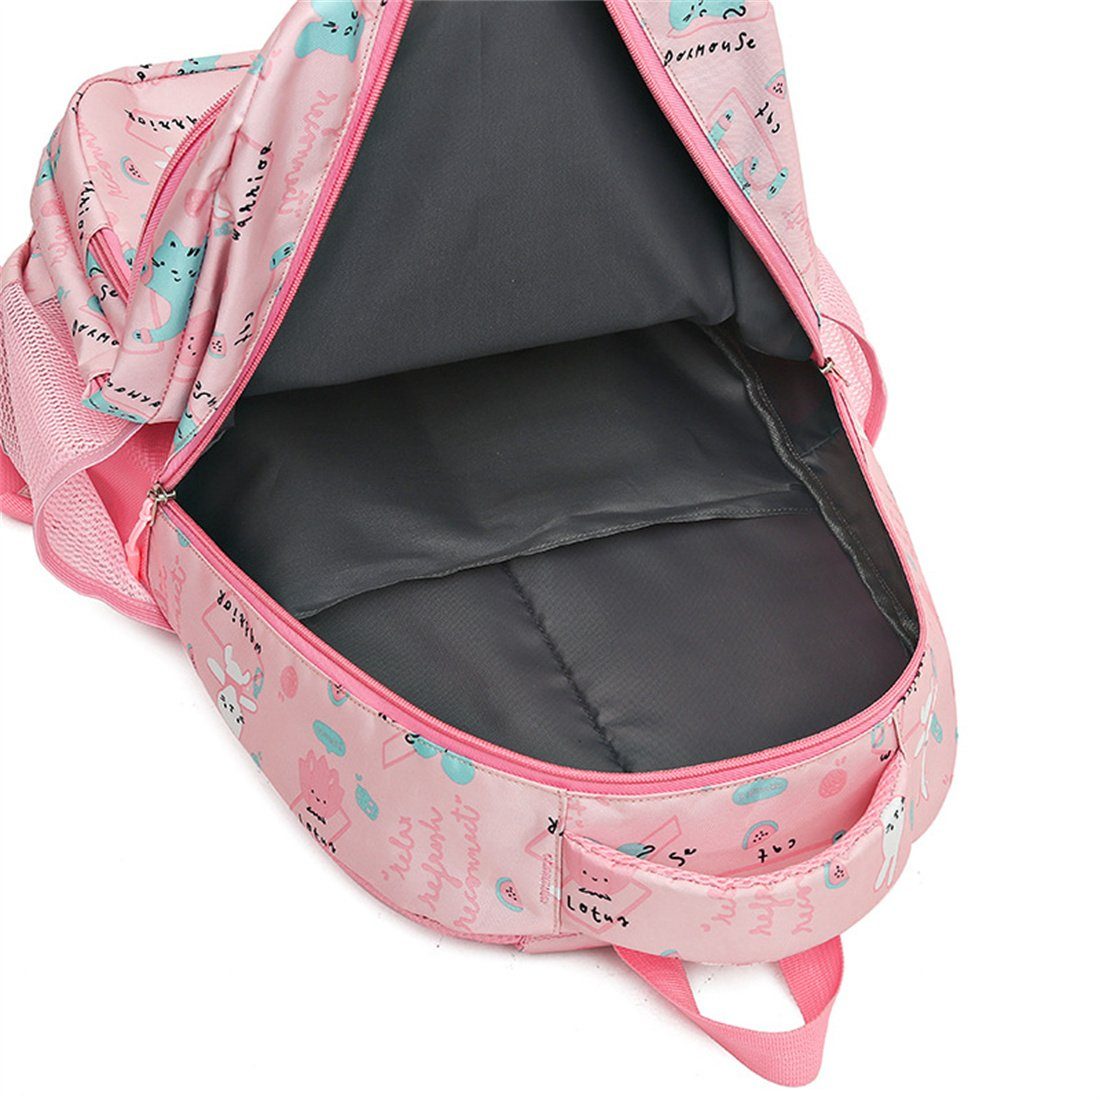 DÖRÖY Schulranzen Schultaschen für Kinder bis Klasse, Schulrucksäcke,Geschenke Rosa 1. der 6